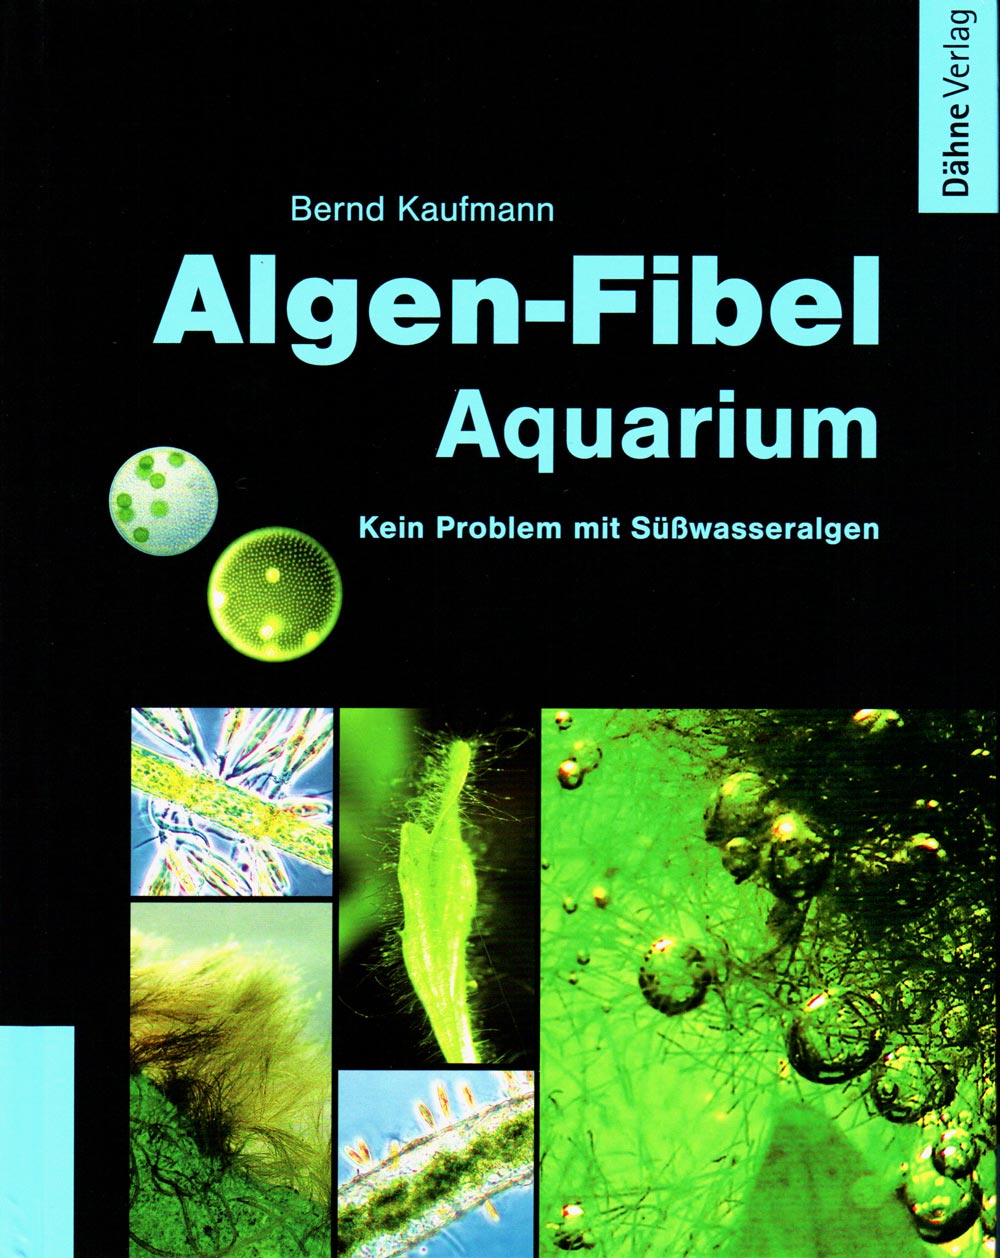 Algen-Fibel Aquarium Vorderseite